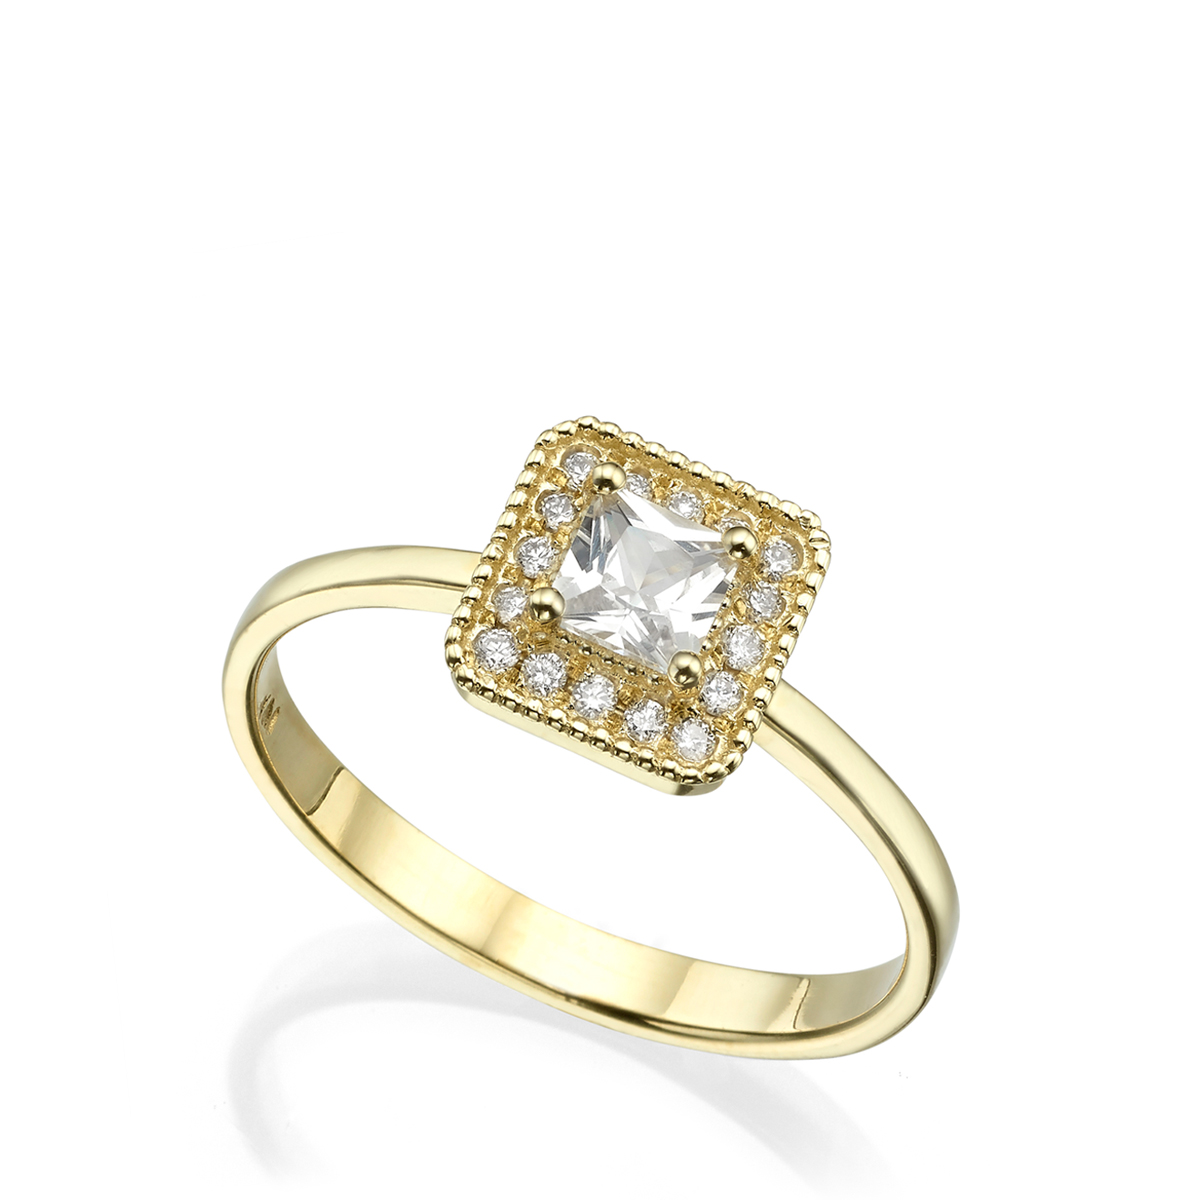 Halo princess cut diamond ring